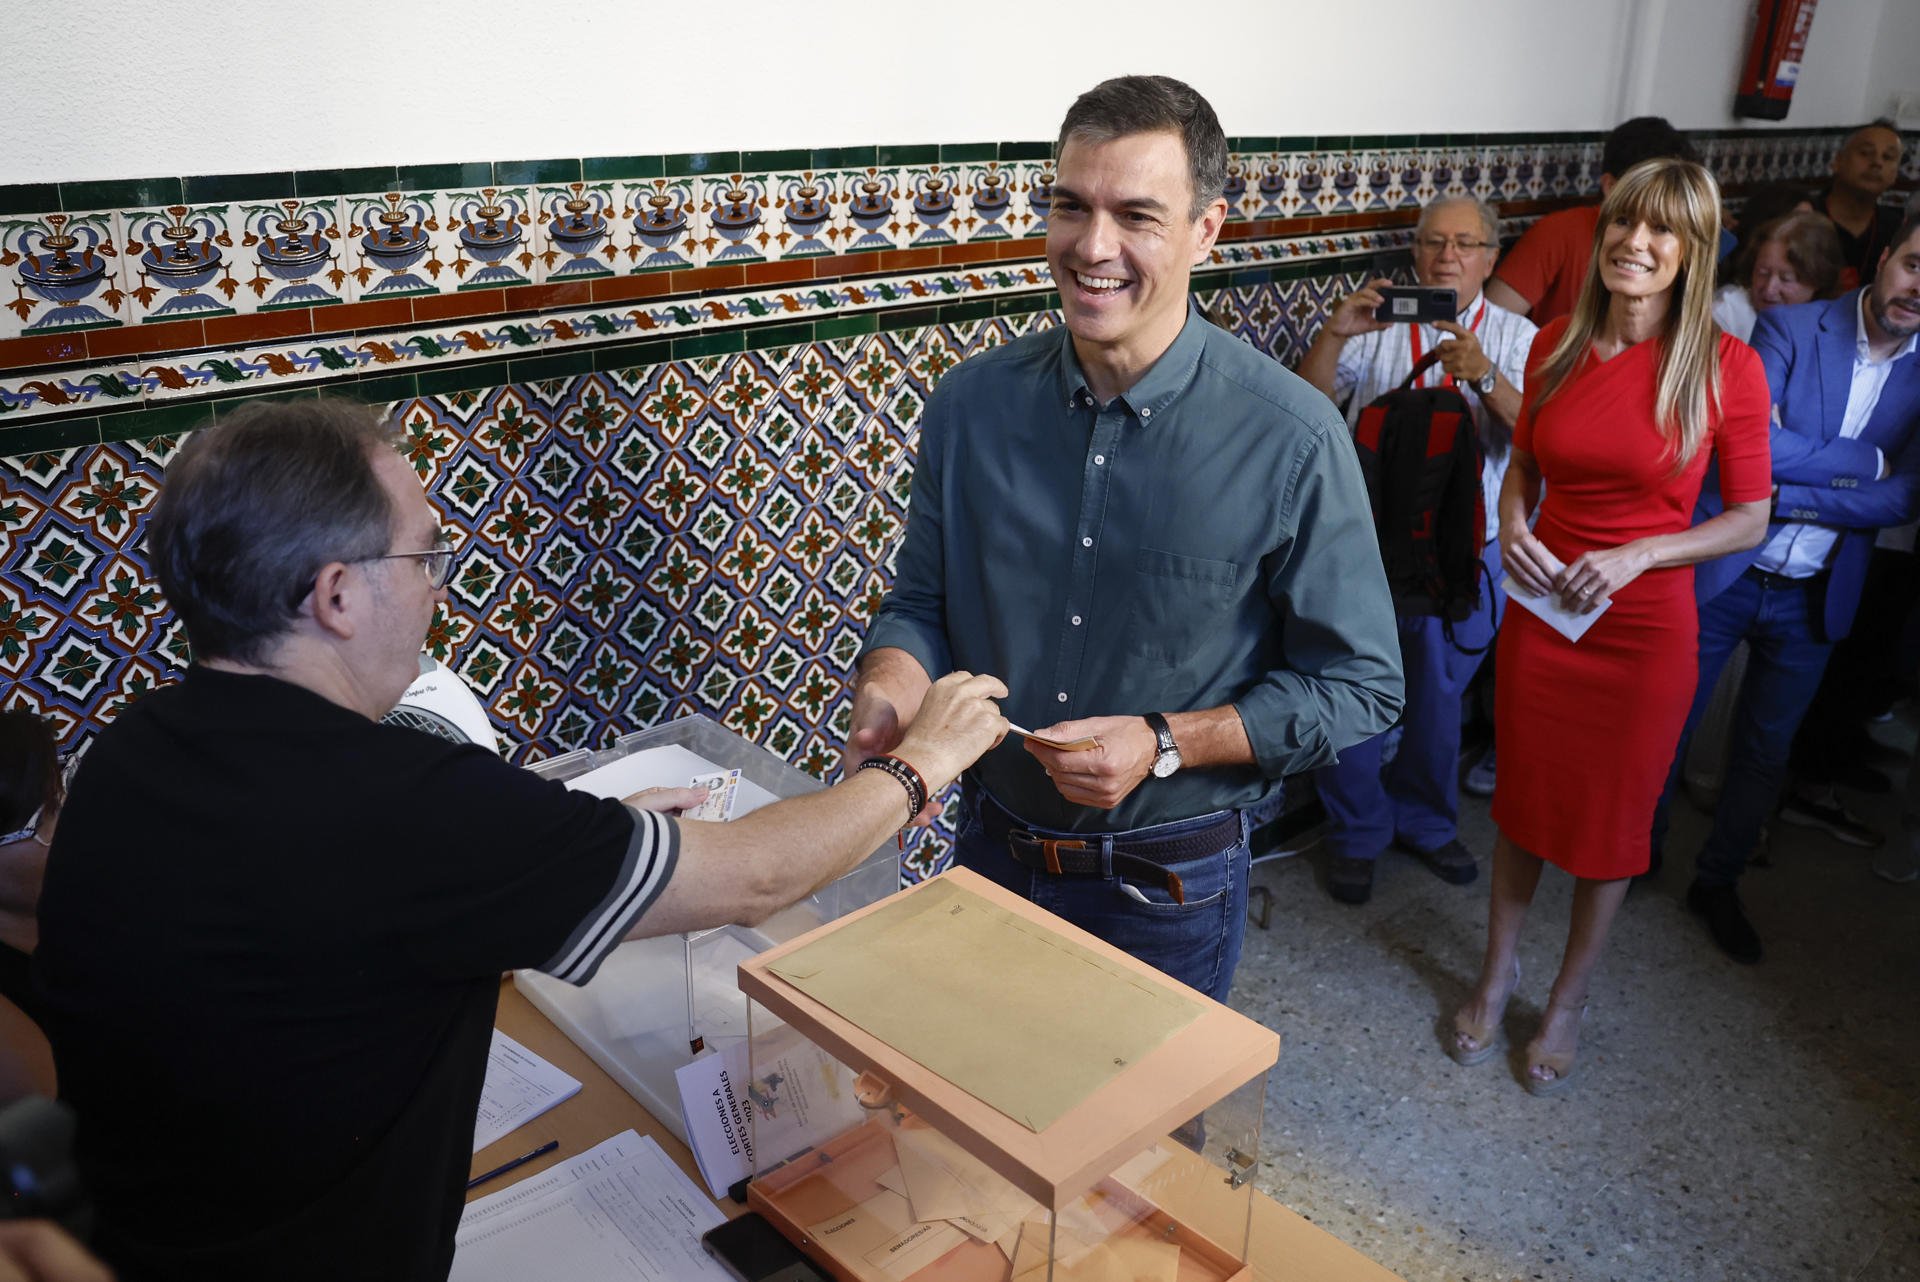 Pedro Sánchez vota entre gritos de 'presidente' y 'fuera': "Tengo buenas vibraciones" | VÍDEO